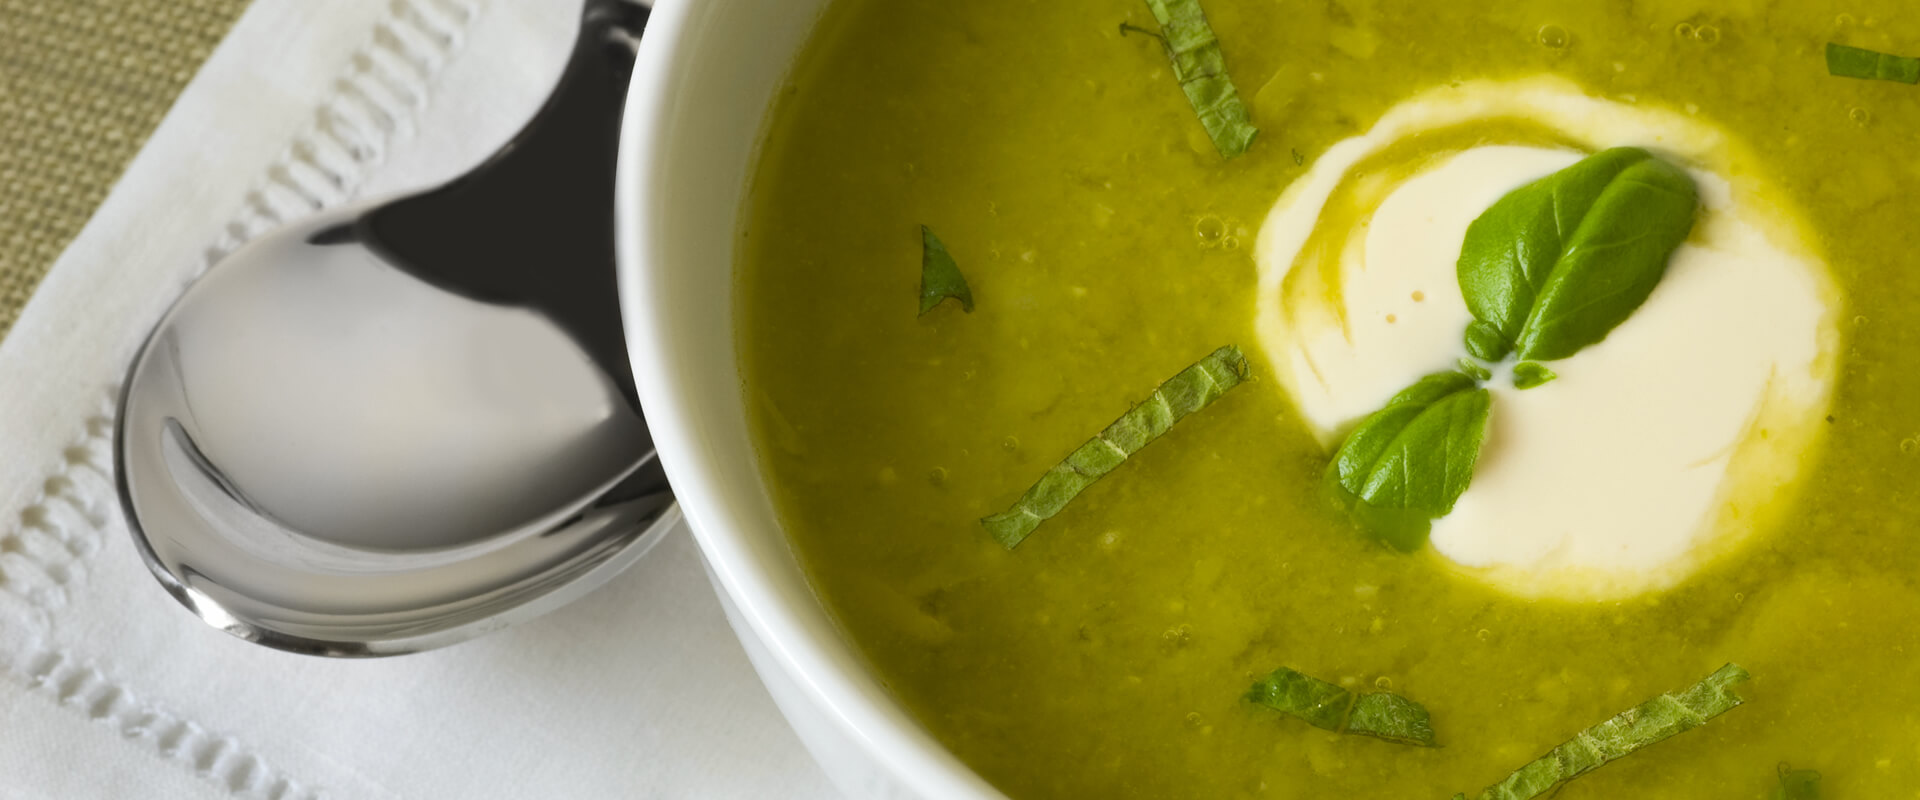 Rezepte herbstliche Suppen – Fratelli Carli